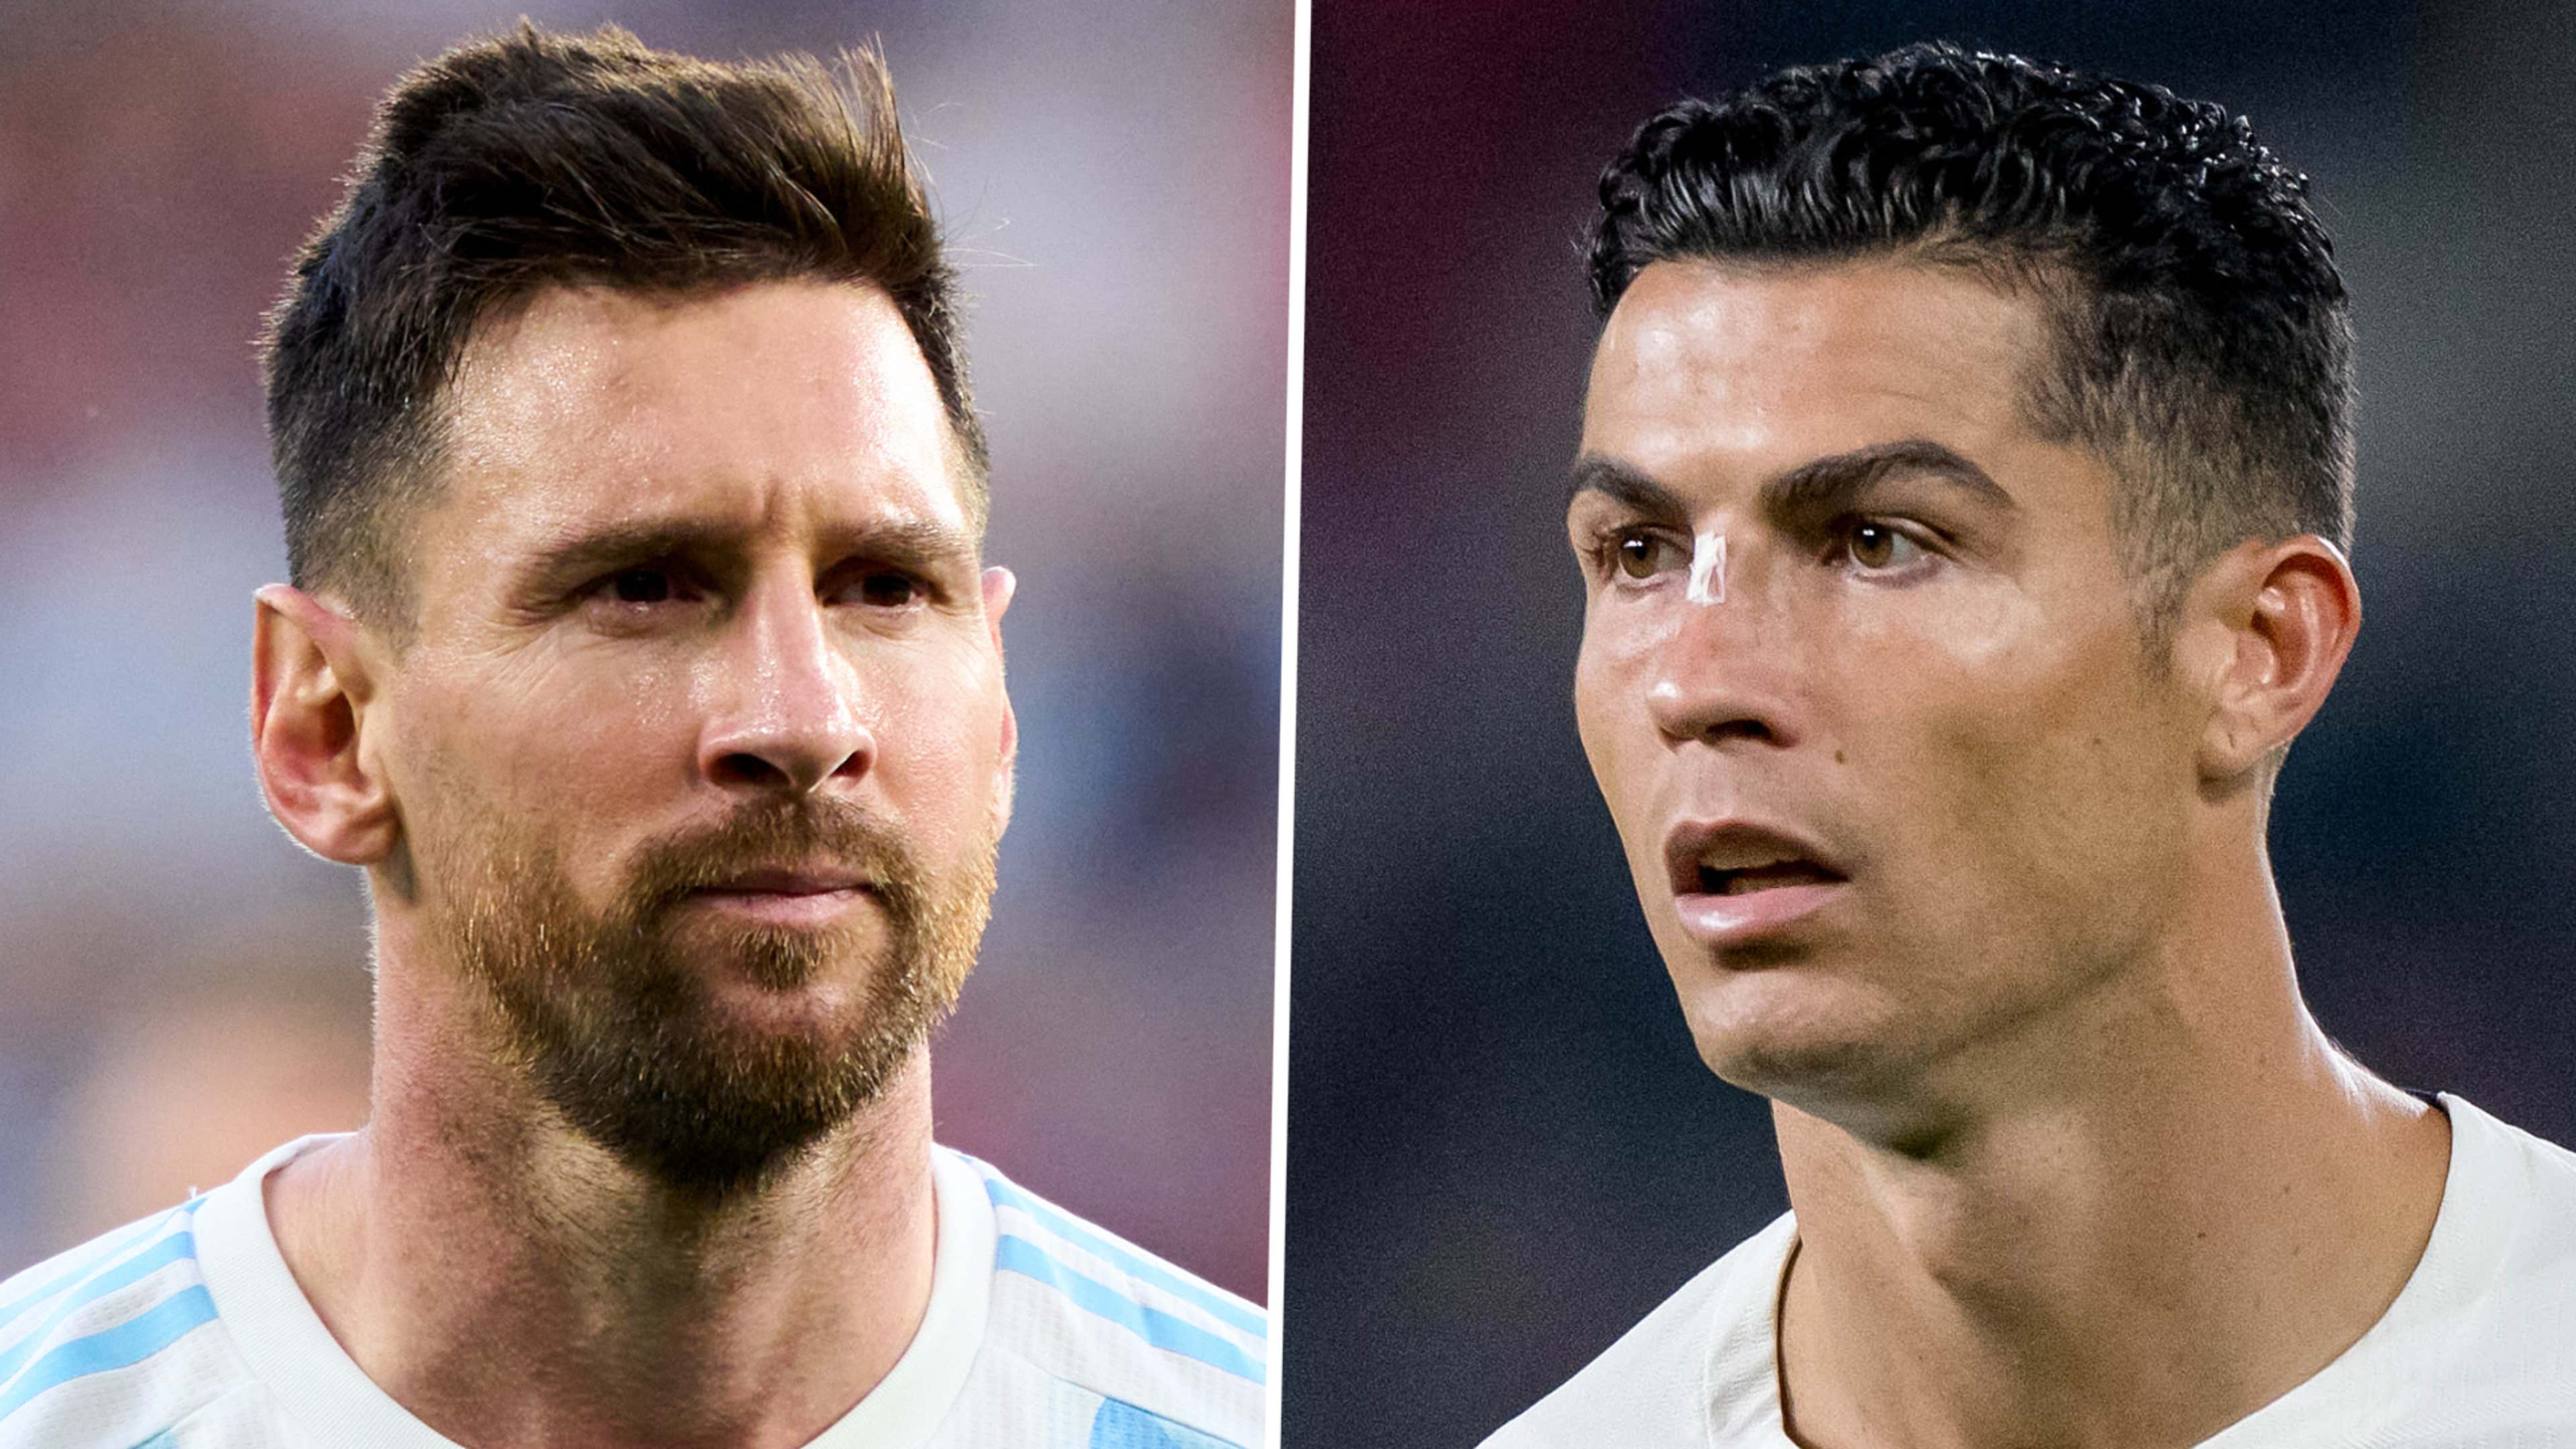 Lionel Messi and Cristiano Ronaldo's internet-breaking picture has